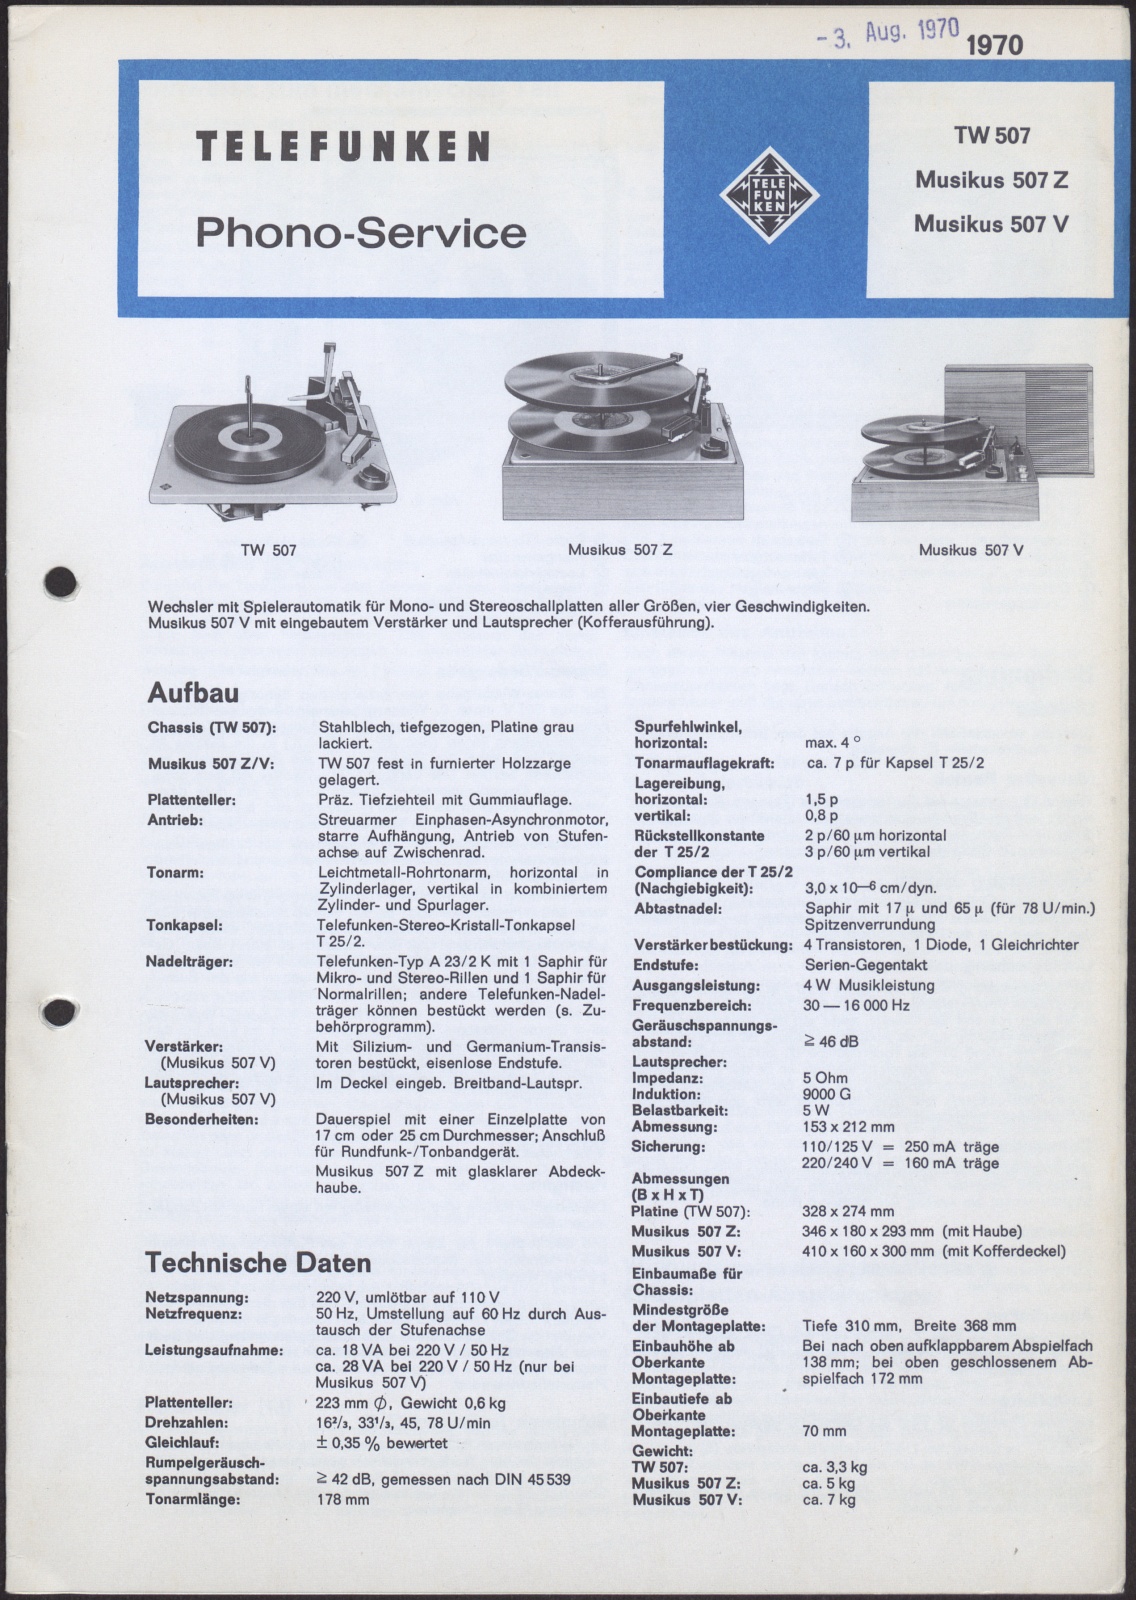 Bedienungsanleitung: Telefunken Phono-Service für TW 507, Musikus 507 Z, Musikus 507 V (Stiftung Deutsches Technikmuseum Berlin CC0)